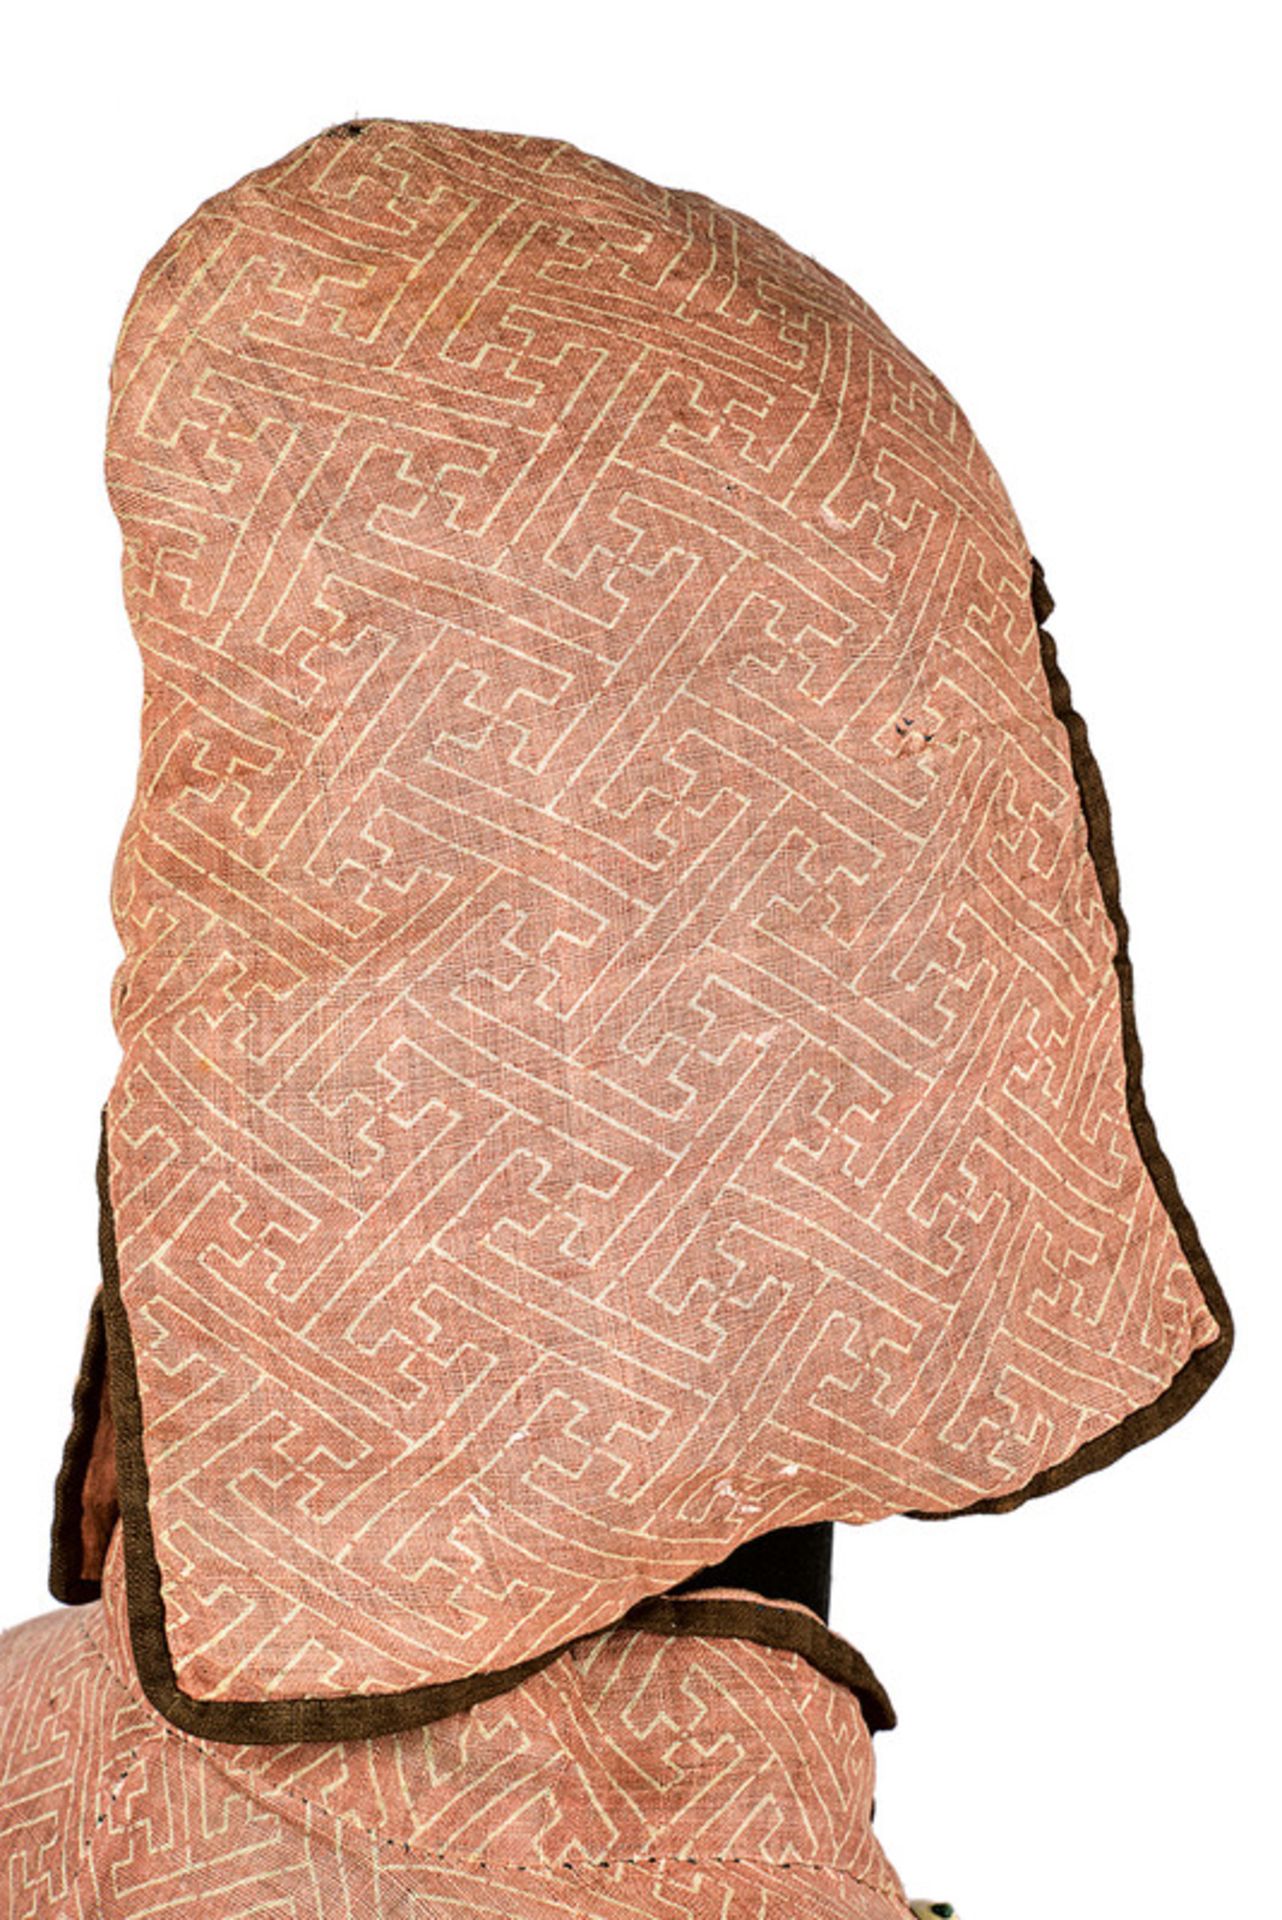 Kusari katabira (chain jacket) - Image 2 of 4